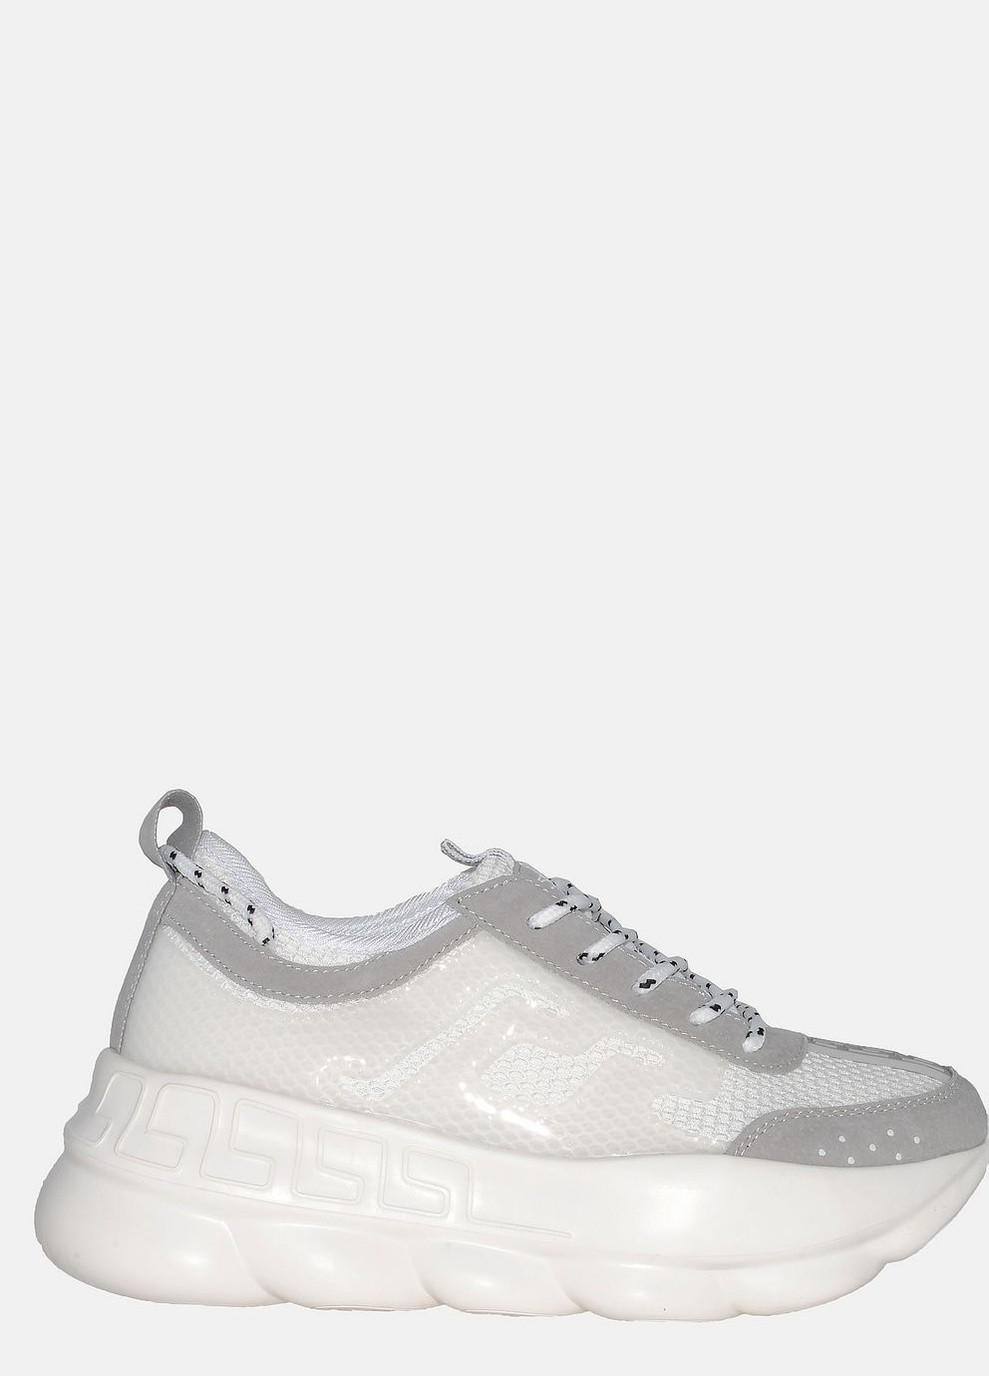 Белые демисезонные кроссовки st3220-8 white-l.grey Stilli